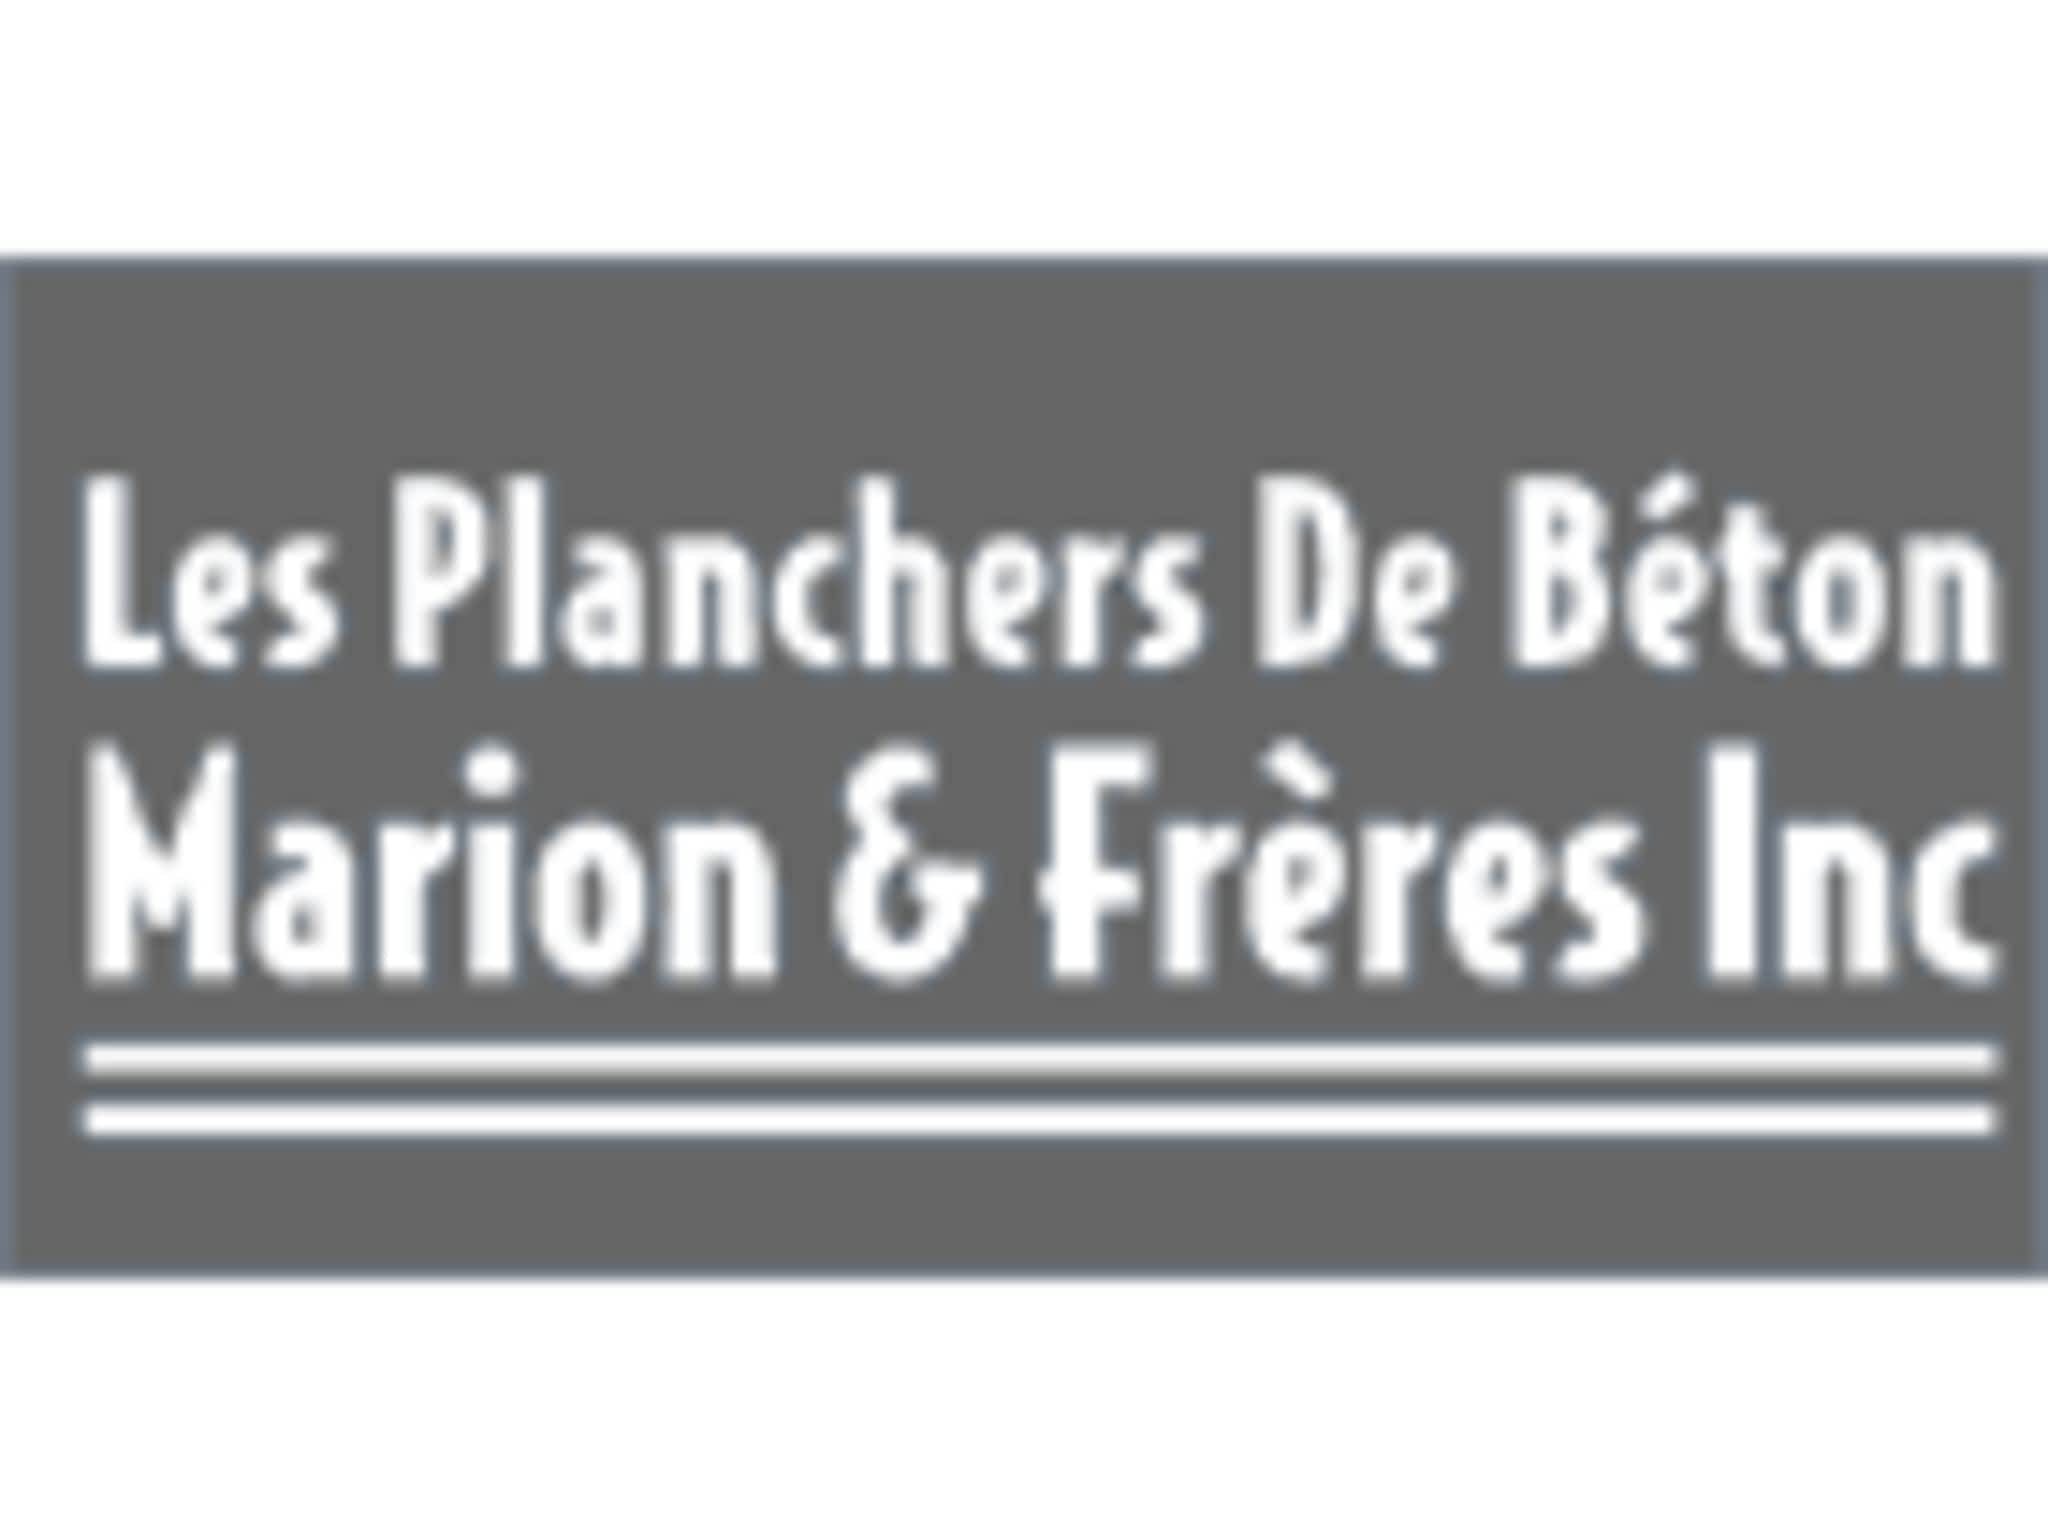 photo Les Planchers De Béton Marion & Frères Inc